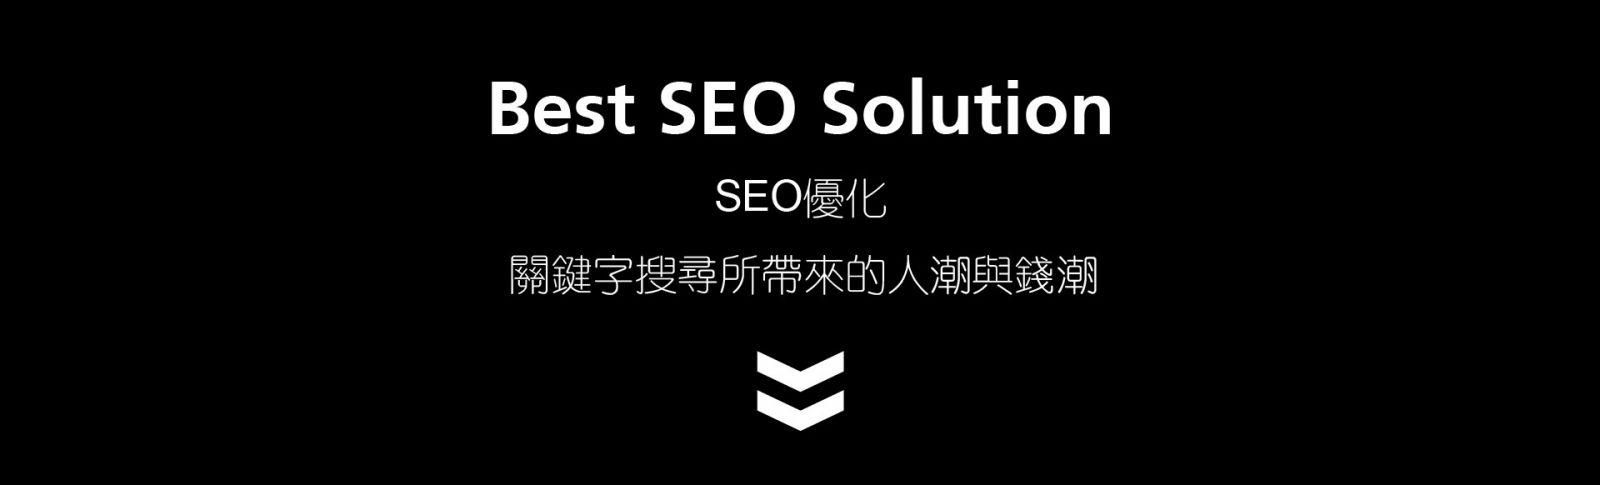 SEO優化Best SEO Solution  關鍵字搜尋所帶來的人潮與錢潮 提升網站流量 / 企業形象 增加網路曝光率 / 瀏覽人數 有效運用區域整合提高銷售 關鍵字帶來的效益